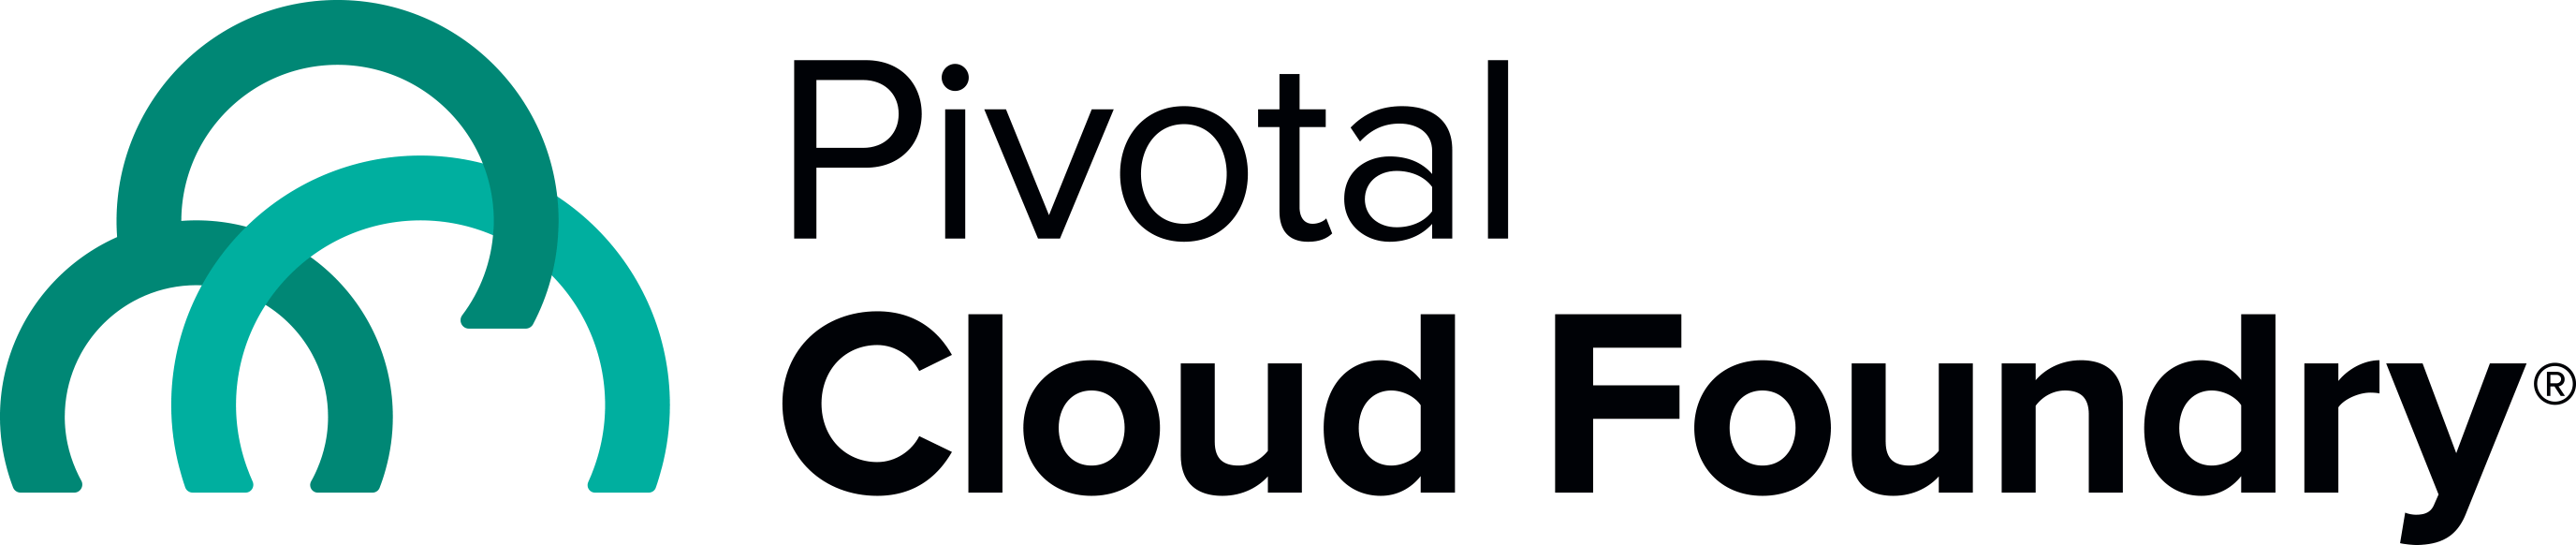 Pivotal Logo - Pivotal Logos